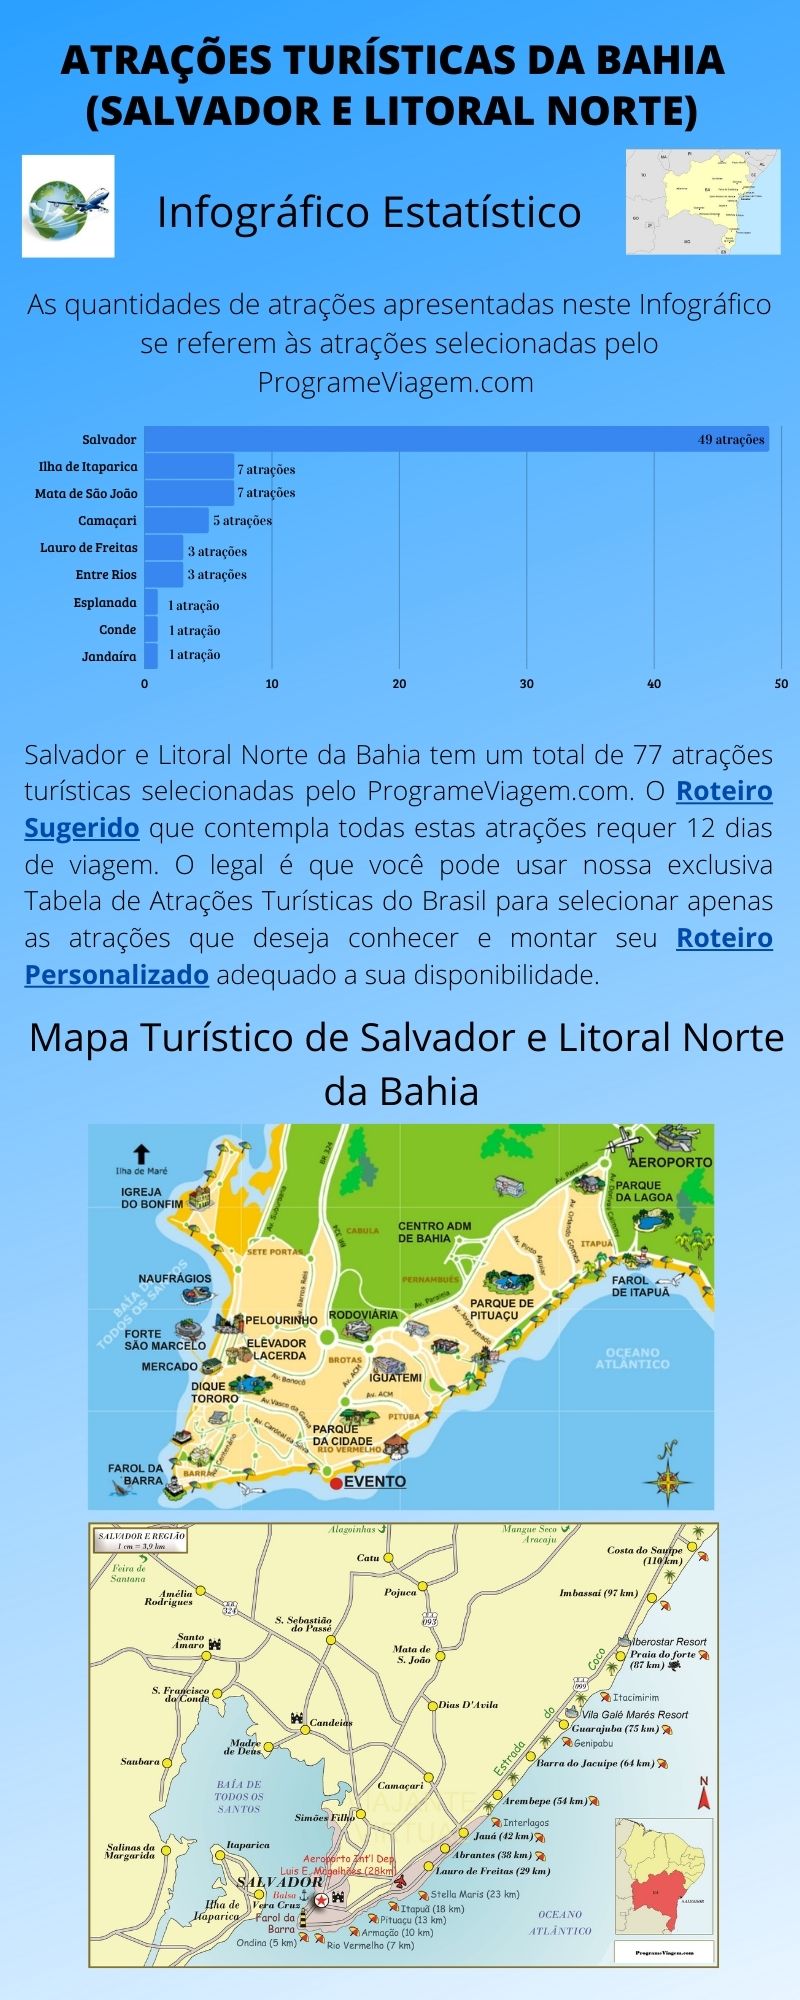 Infográfico Atrações Turísticas da Bahia (Salvador e Litoral Norte)